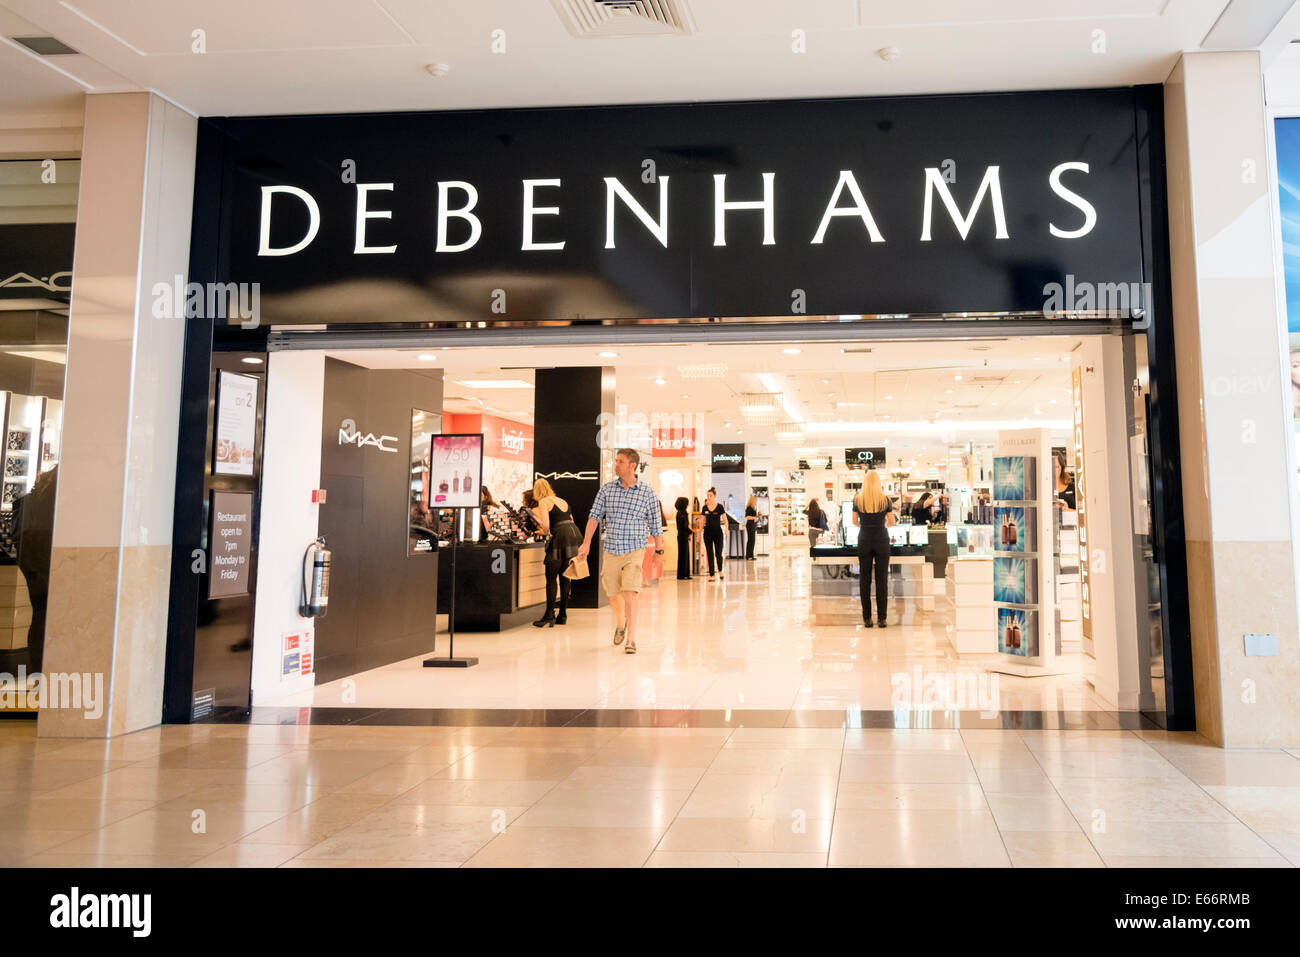 Debenhams store, UK. Stock Photo